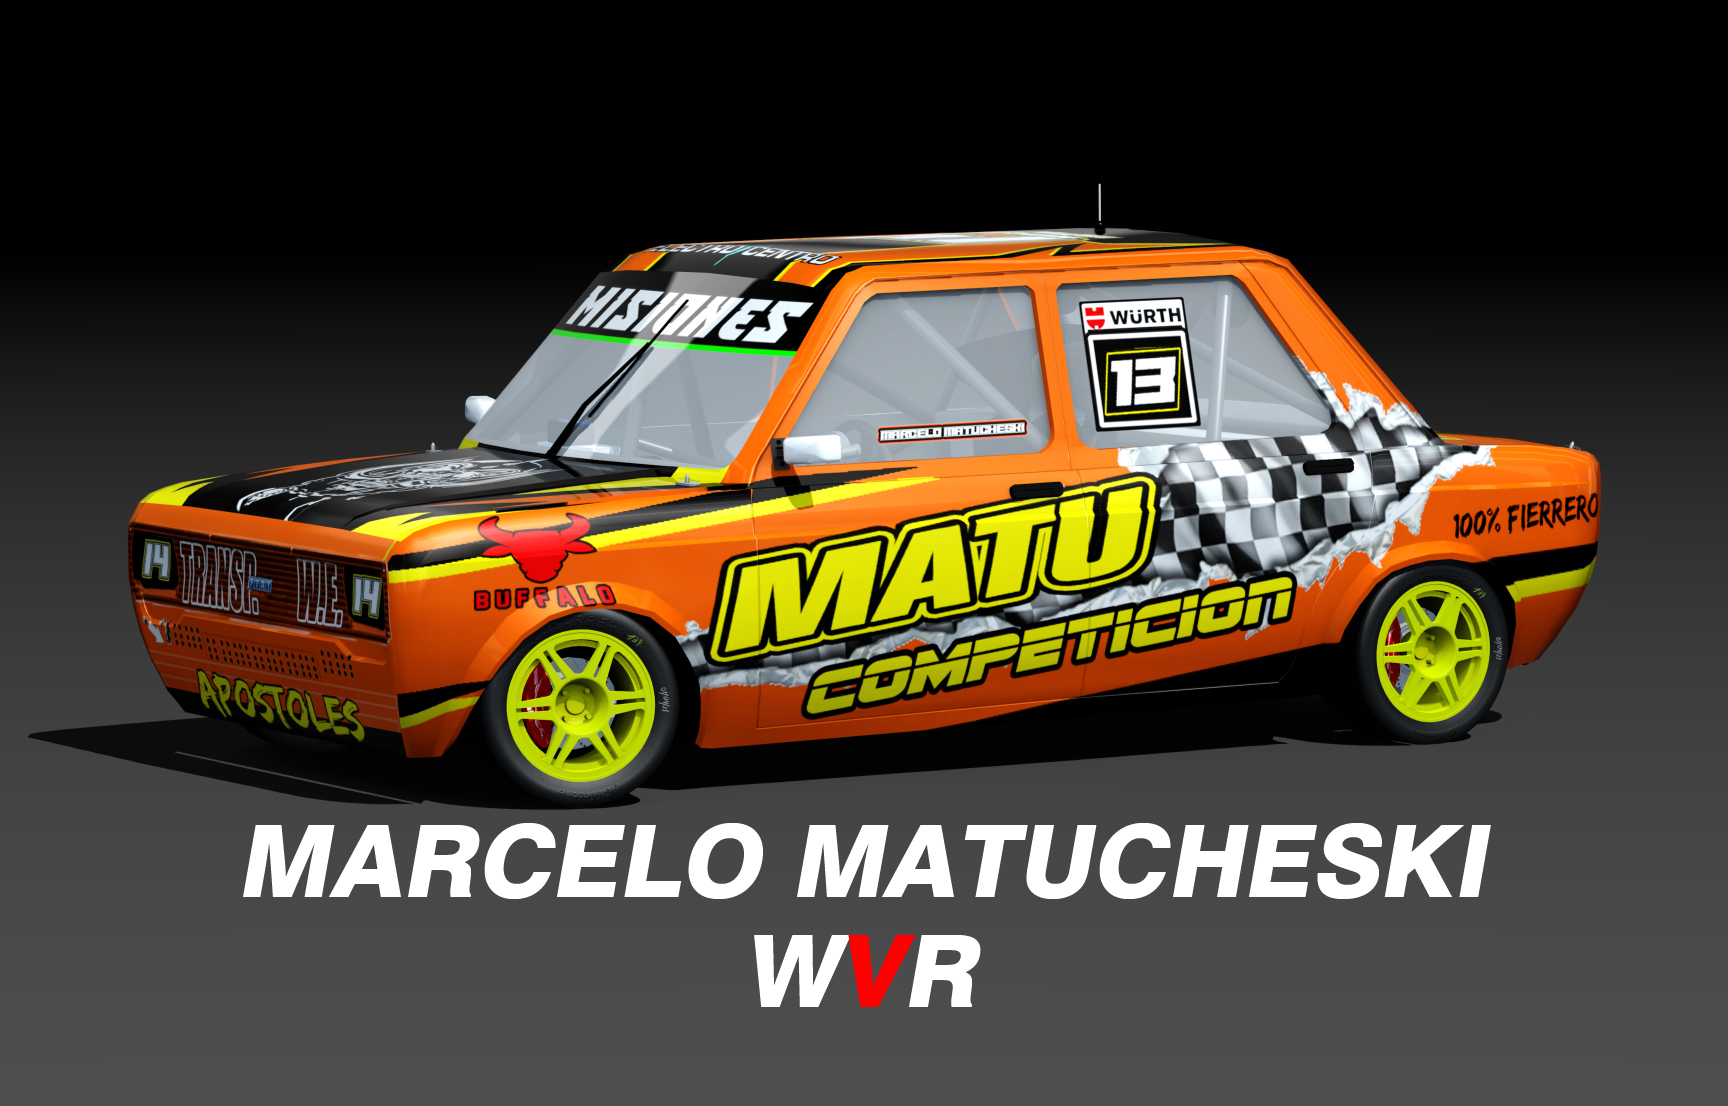 WVR Turismo 1.4 FIAT 128, skin marcelo matucheski